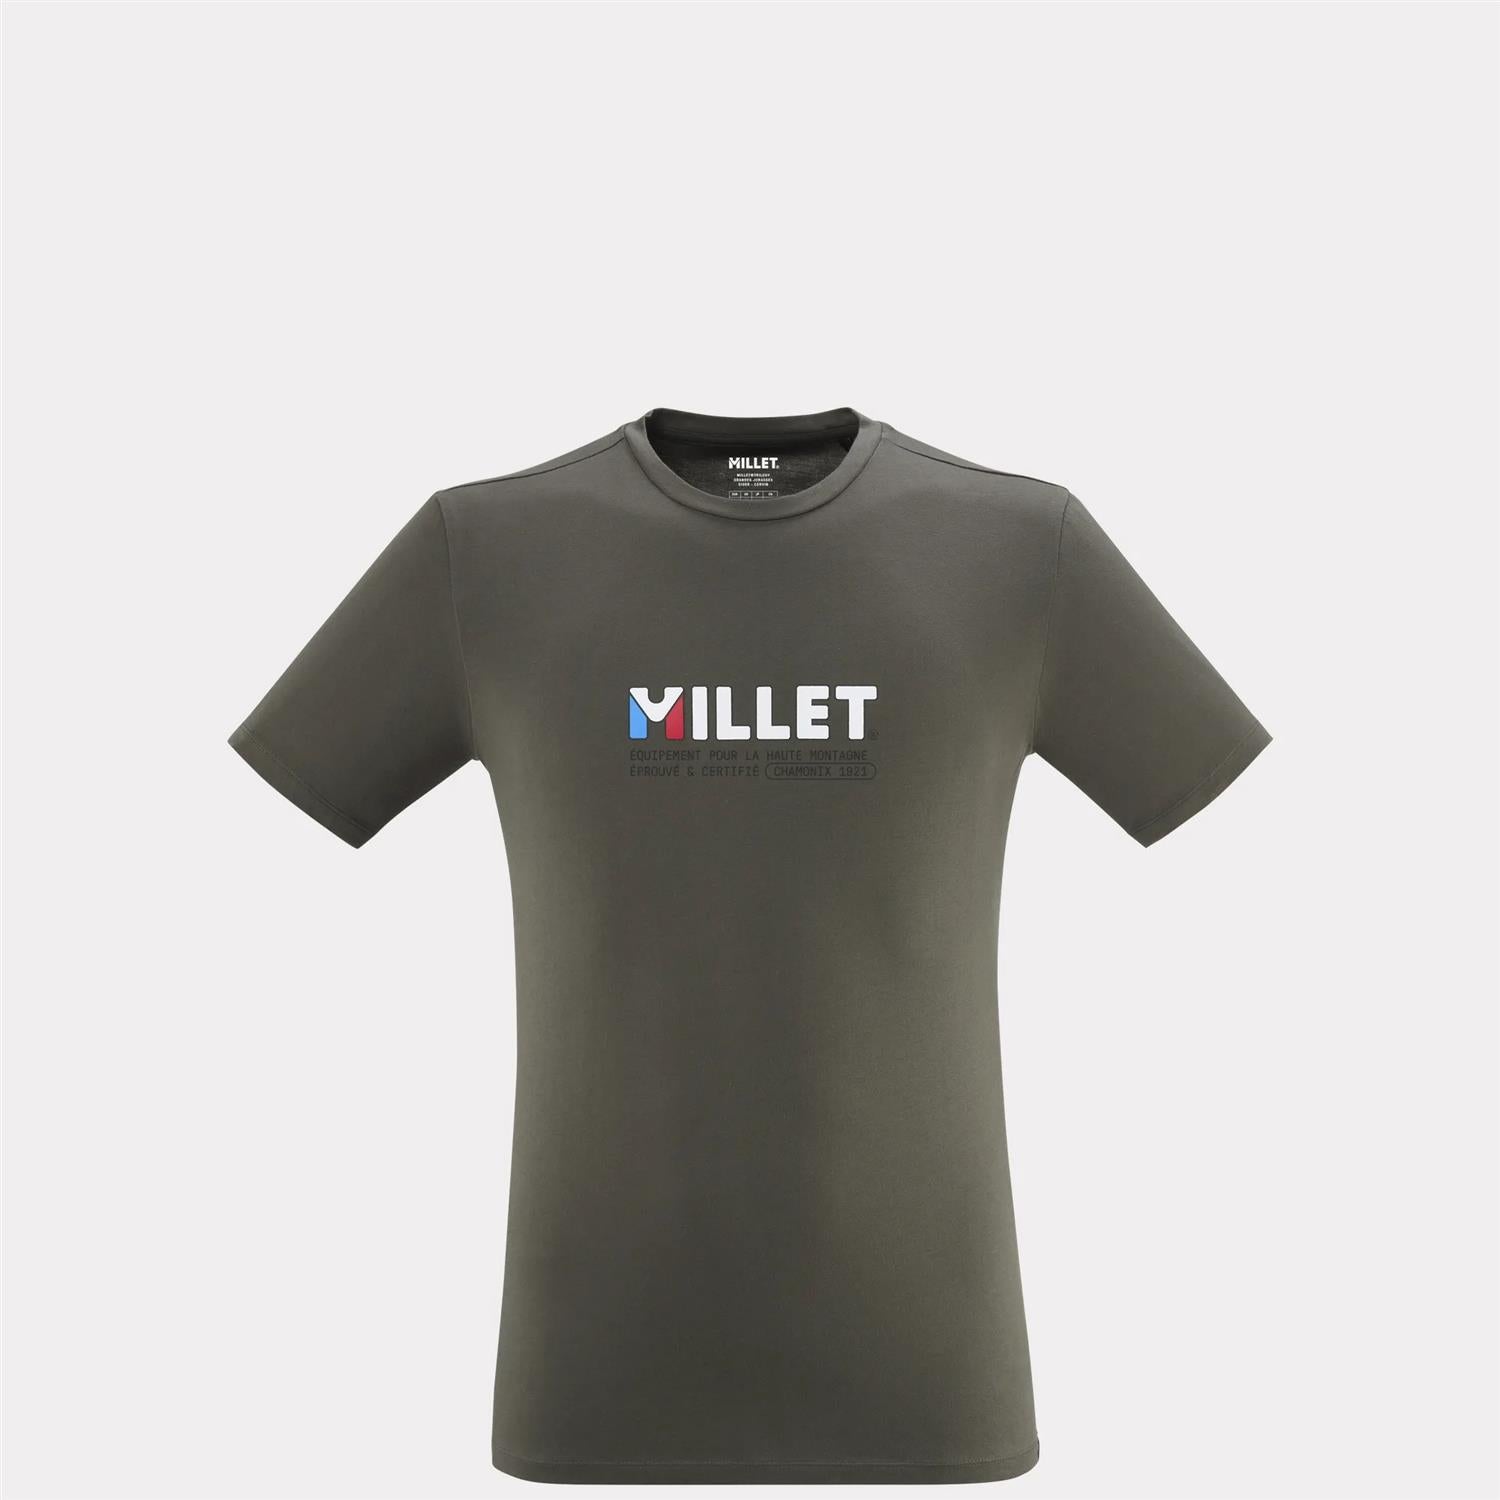 Millet TS t-shirt